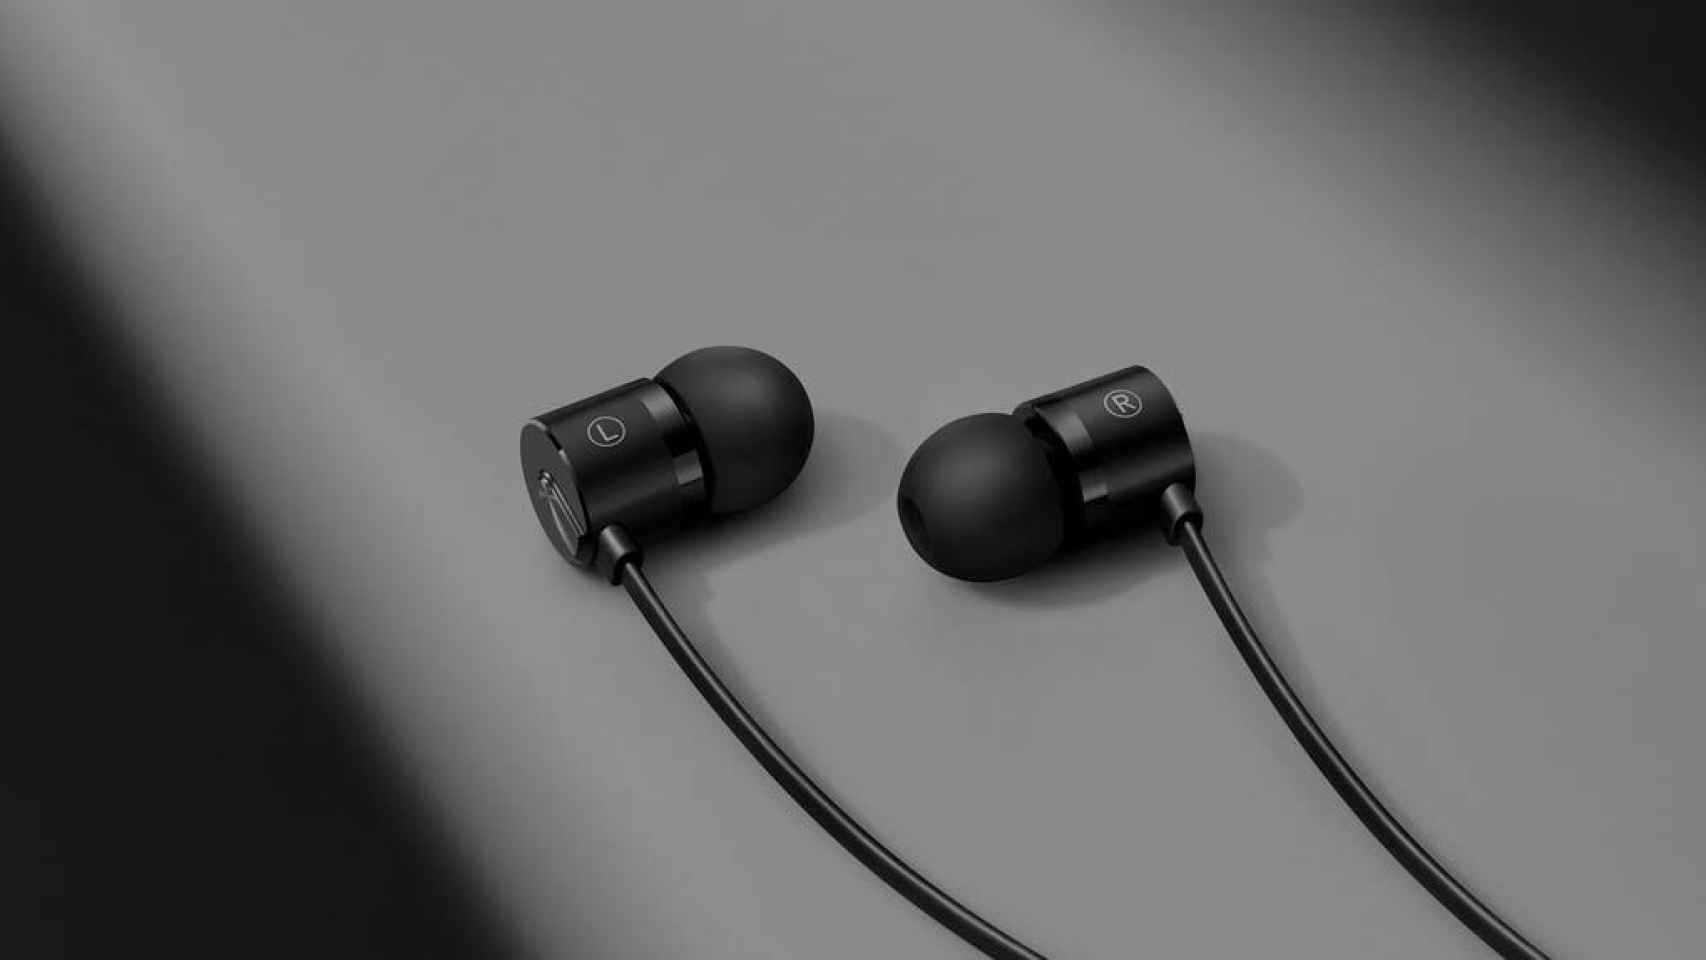 OnePlus confirma el próximo móvil al presentar sus nuevos auriculares